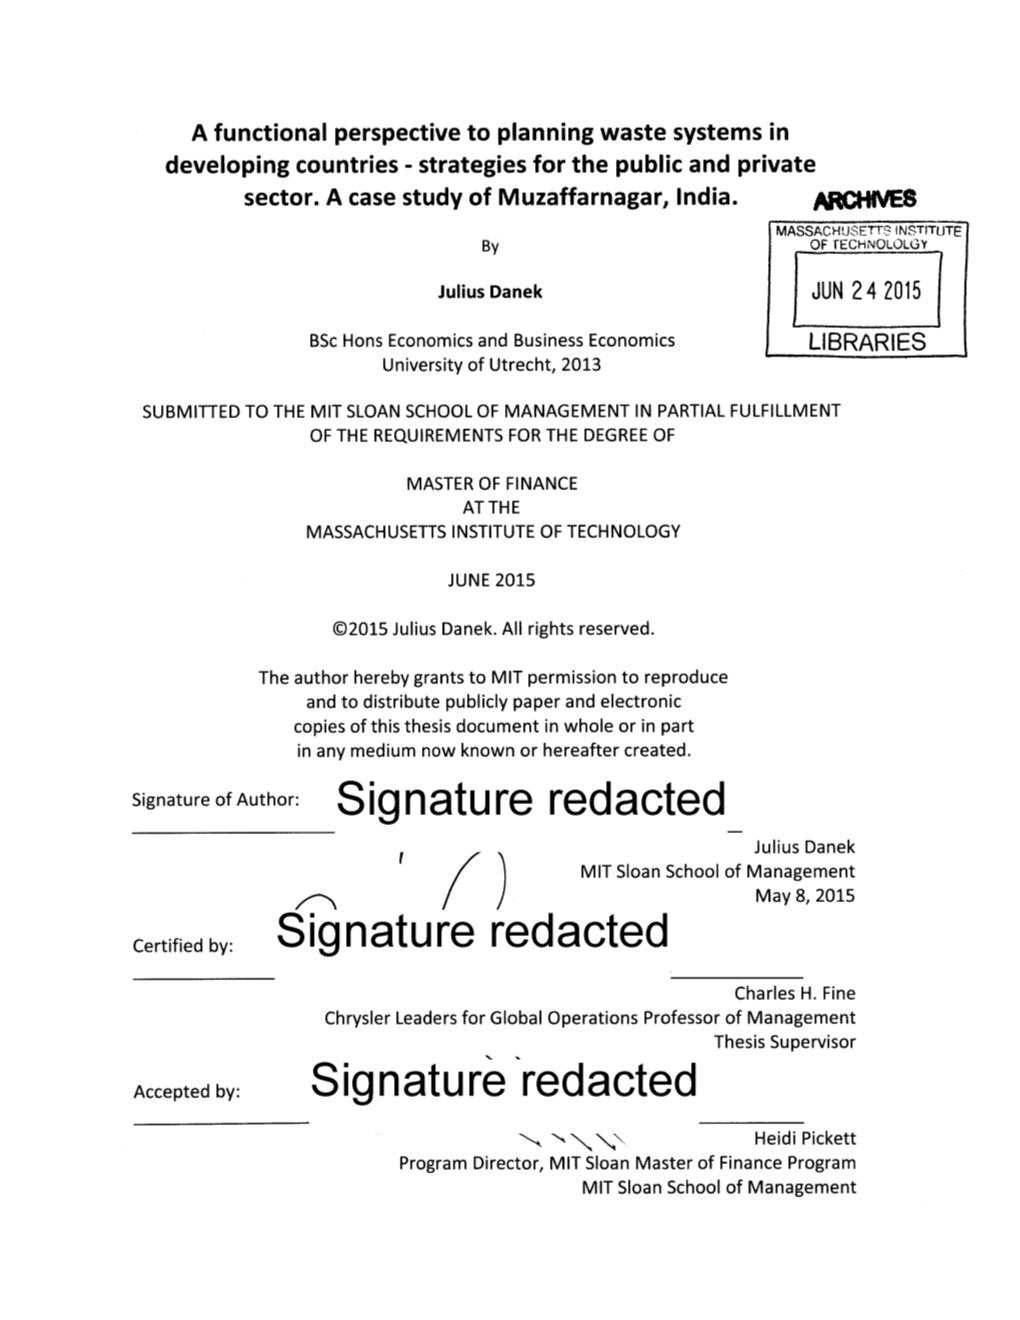 Signature Redacted Julius Danek MIT Sloan School of Management ) May 8, 2015 Certified By: Signature Redacted